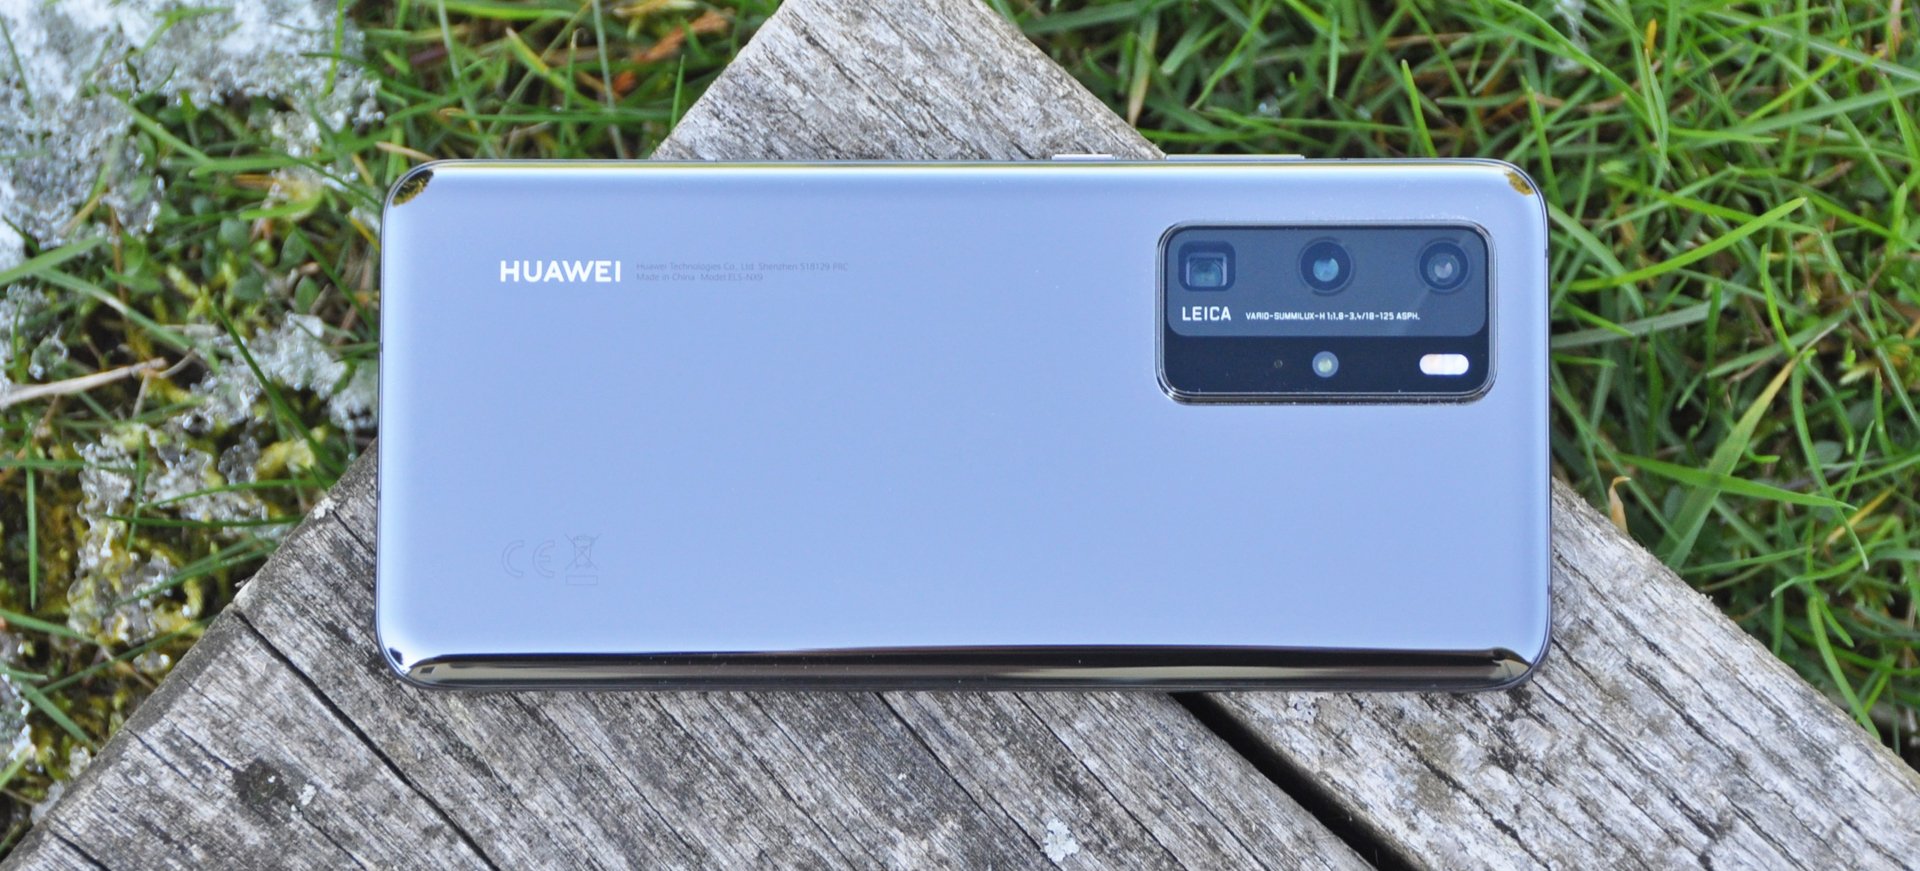 Huawei P40 Pro recenze